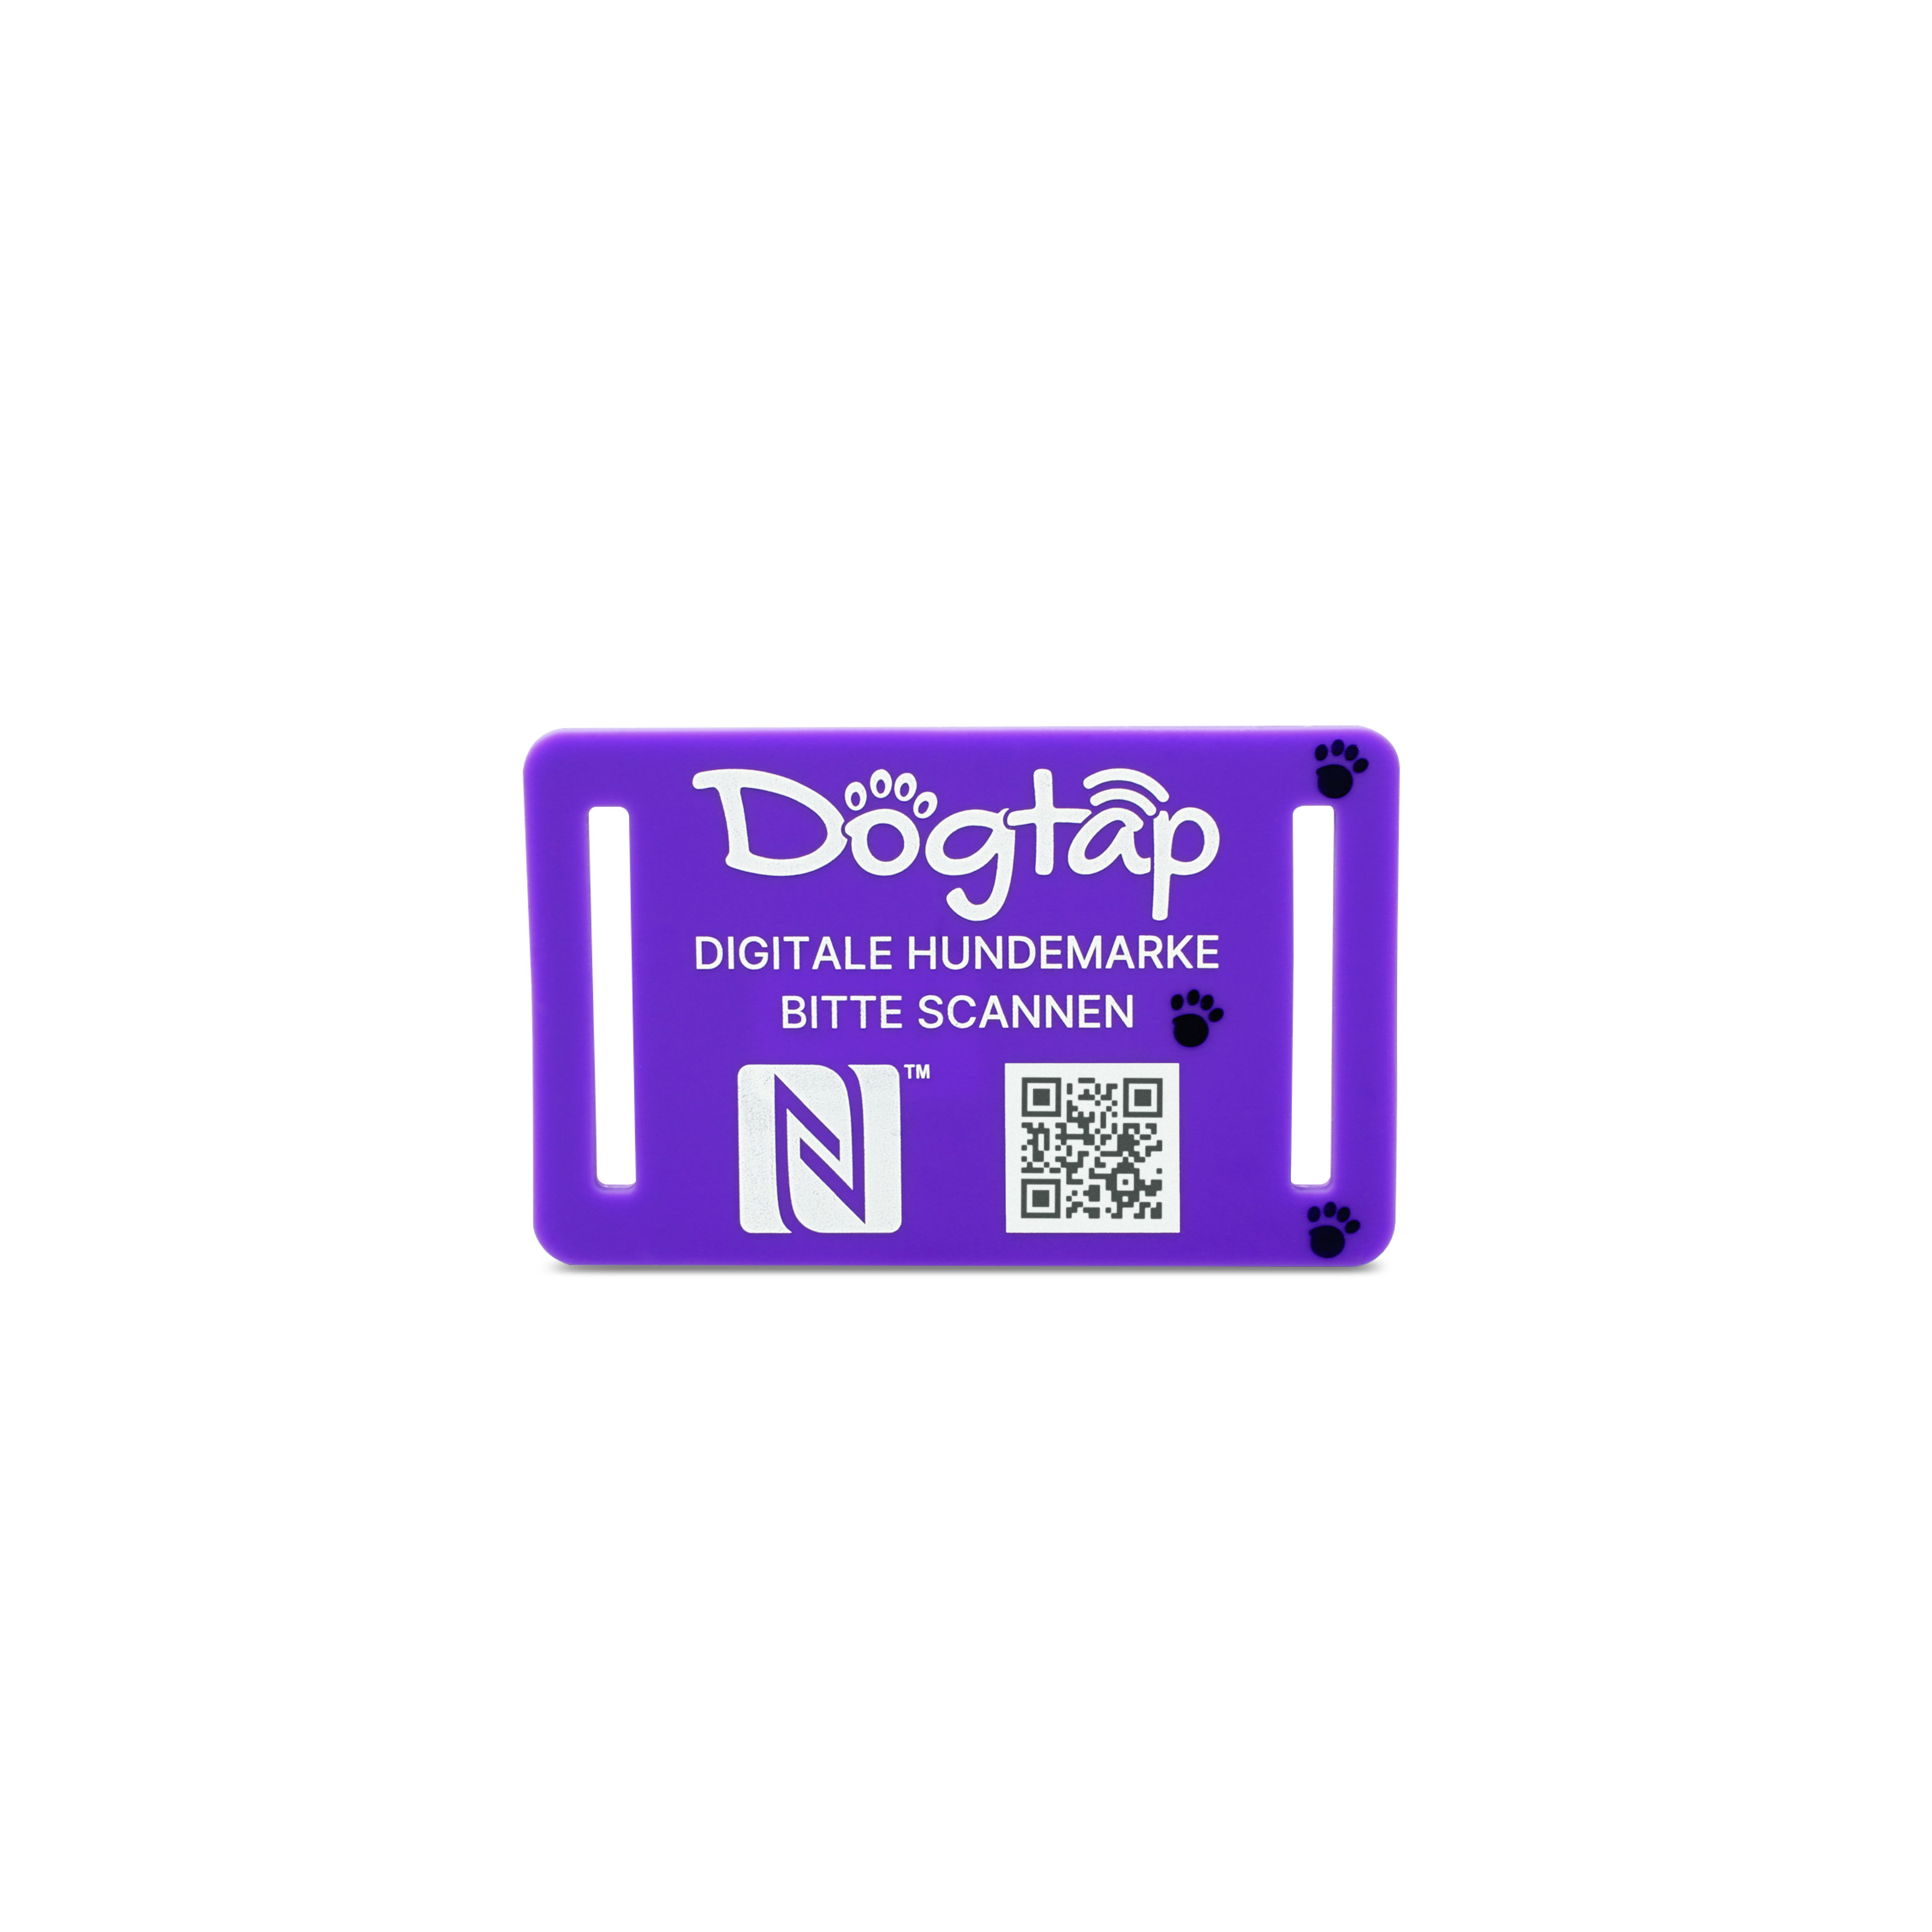 Dogtap Light Small aus Silikon in lila mit deutscher Aufschrift